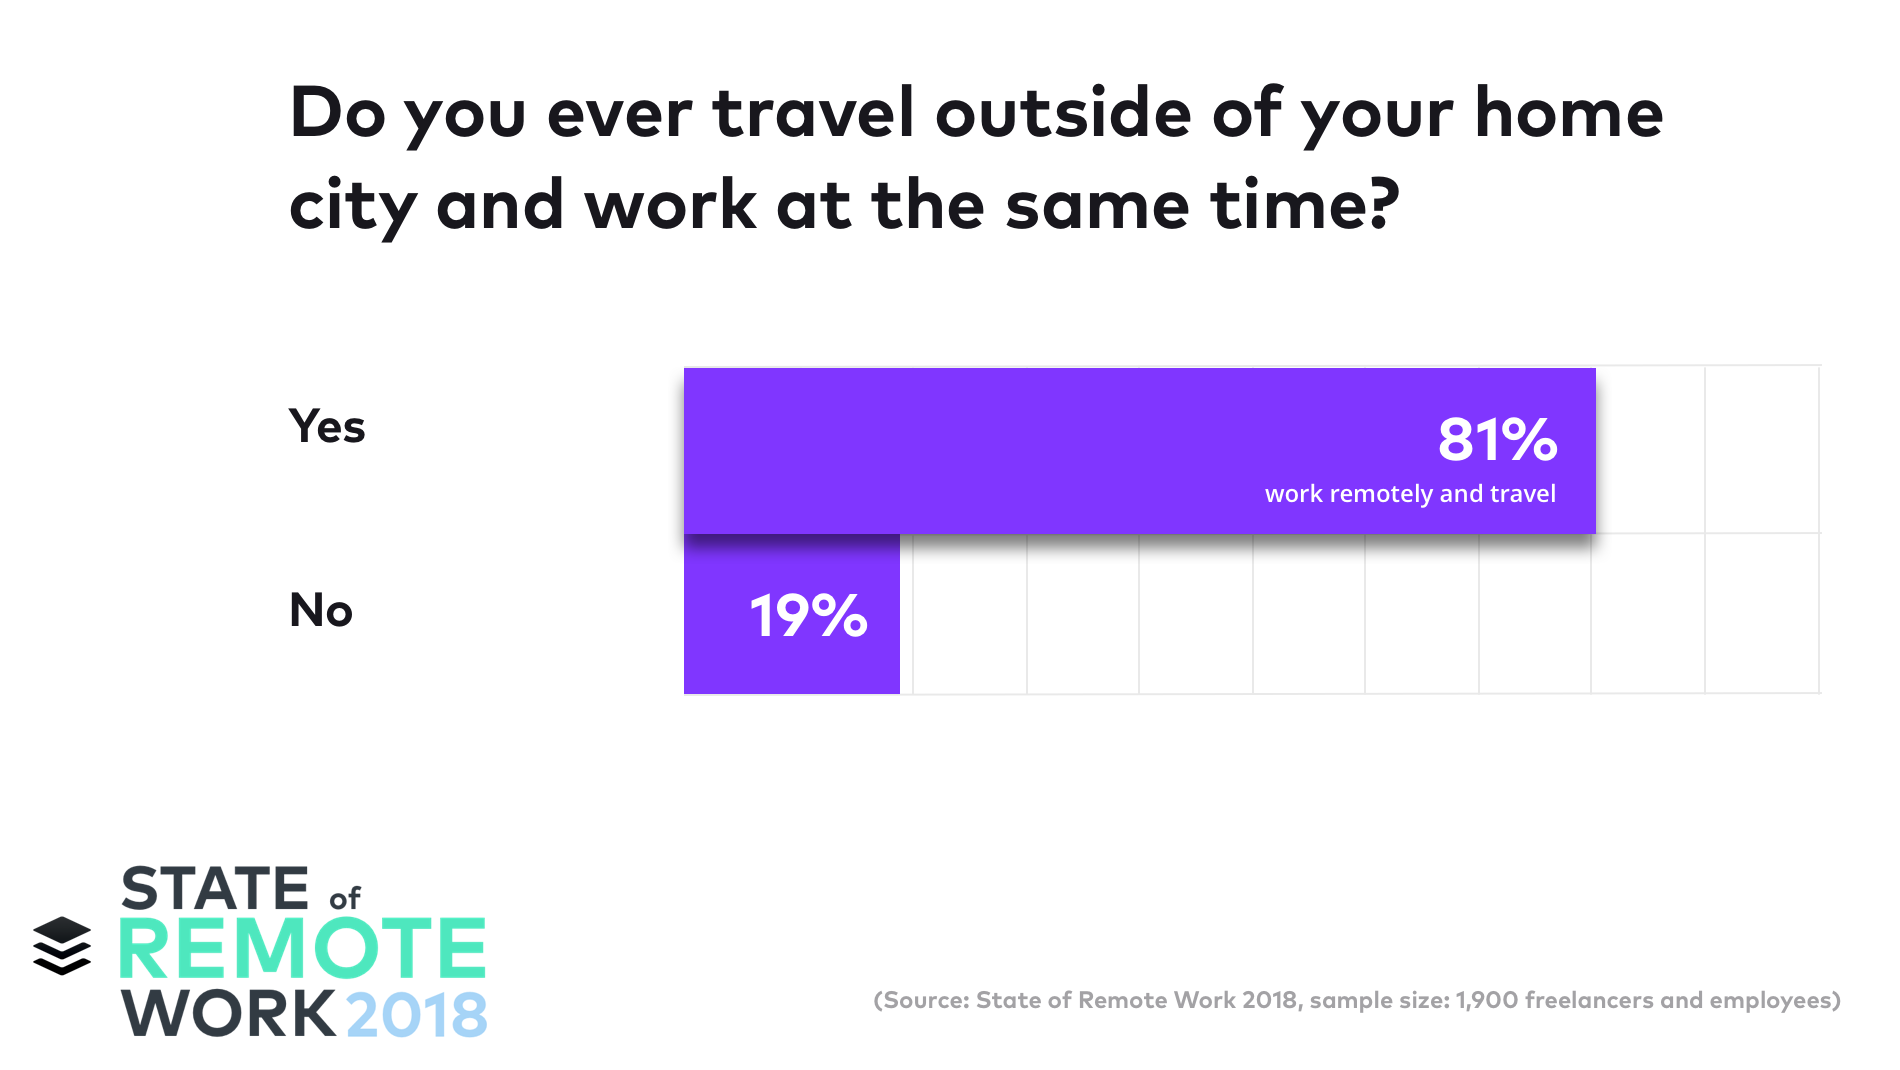 سافر 81٪ ممن شملتهم الدراسة خارج مدينتهم وقضوا وقتًا في العمل خلال تلك الرحلات.